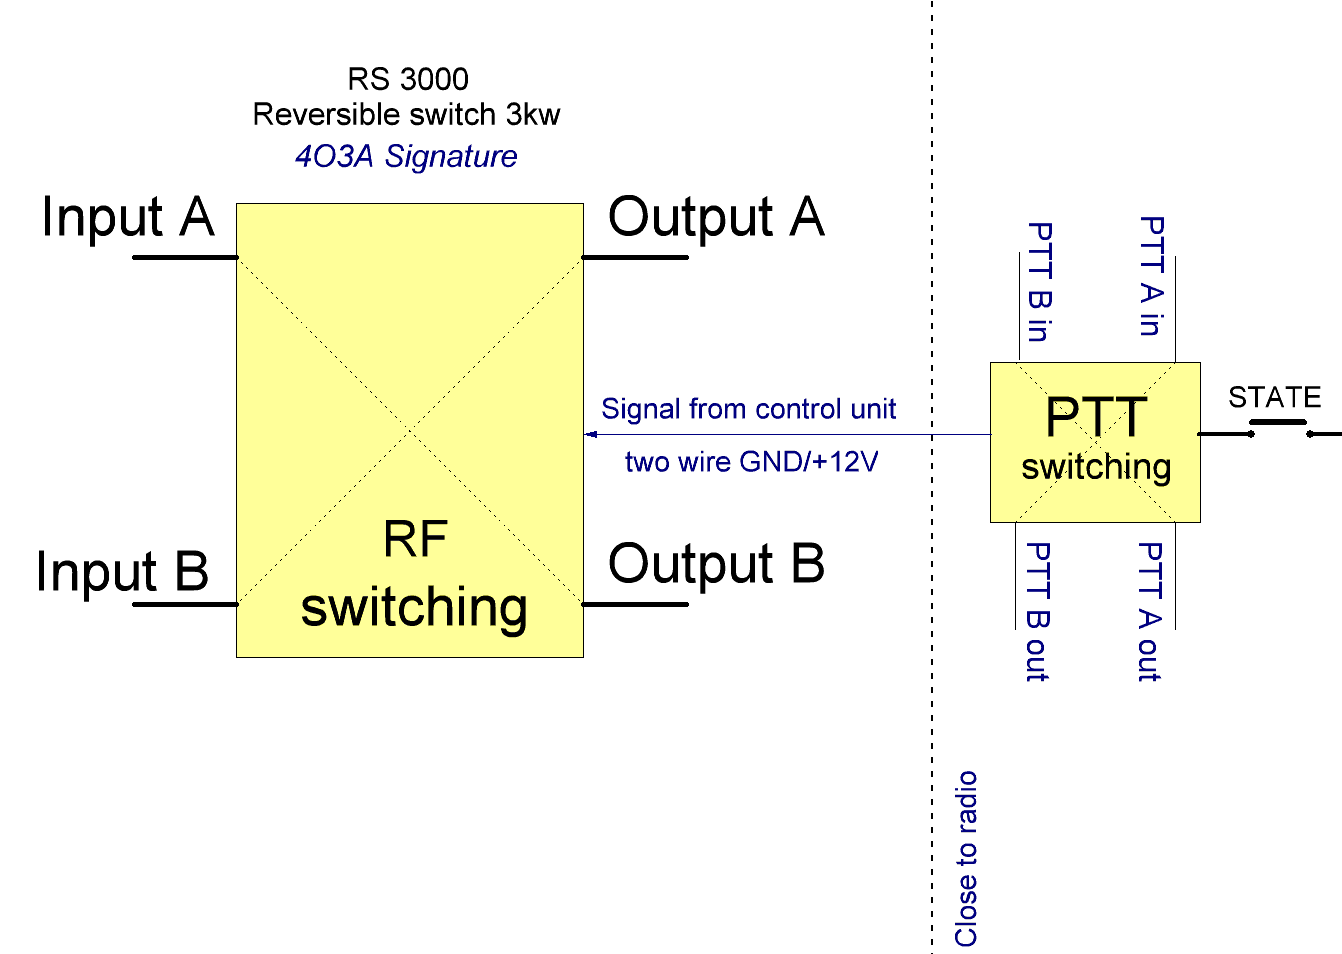 RS3000 diagram